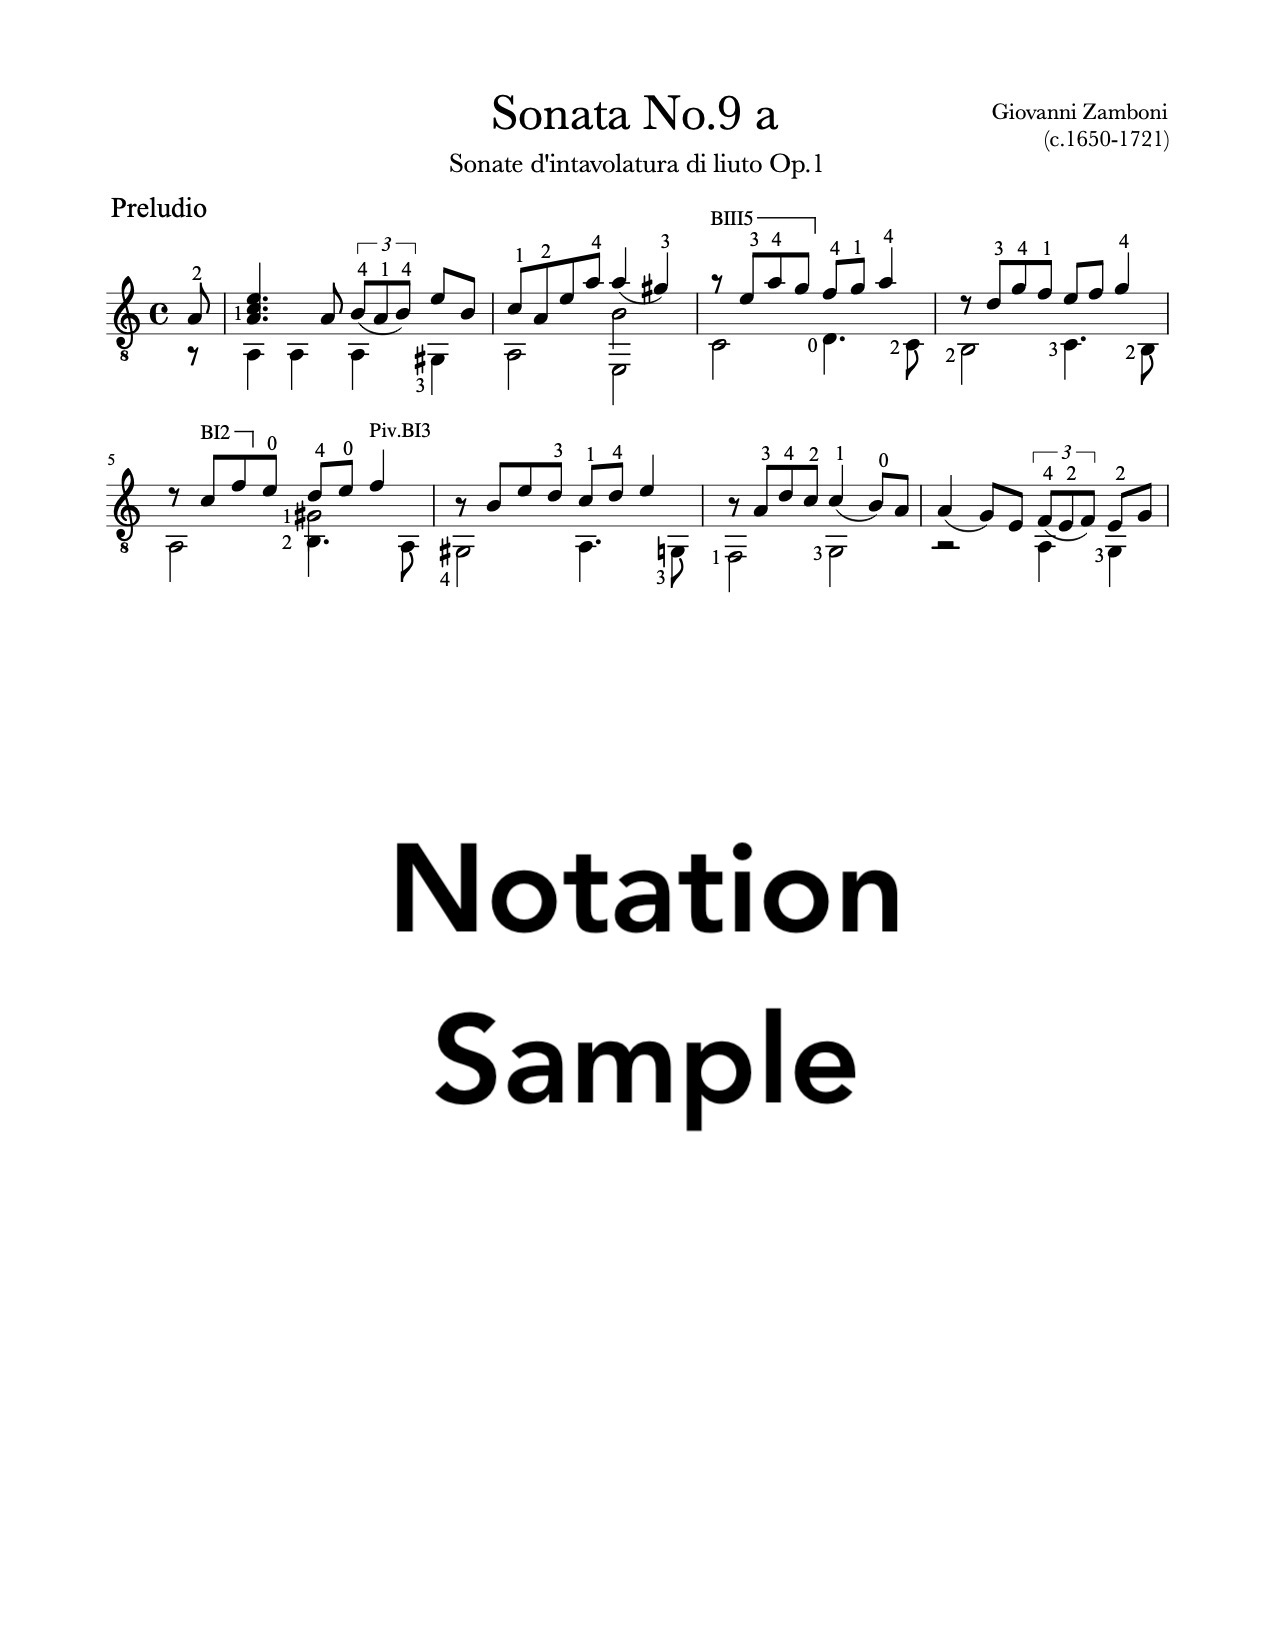 Sonata No.9 by Giovanni Zamboni (Sample)